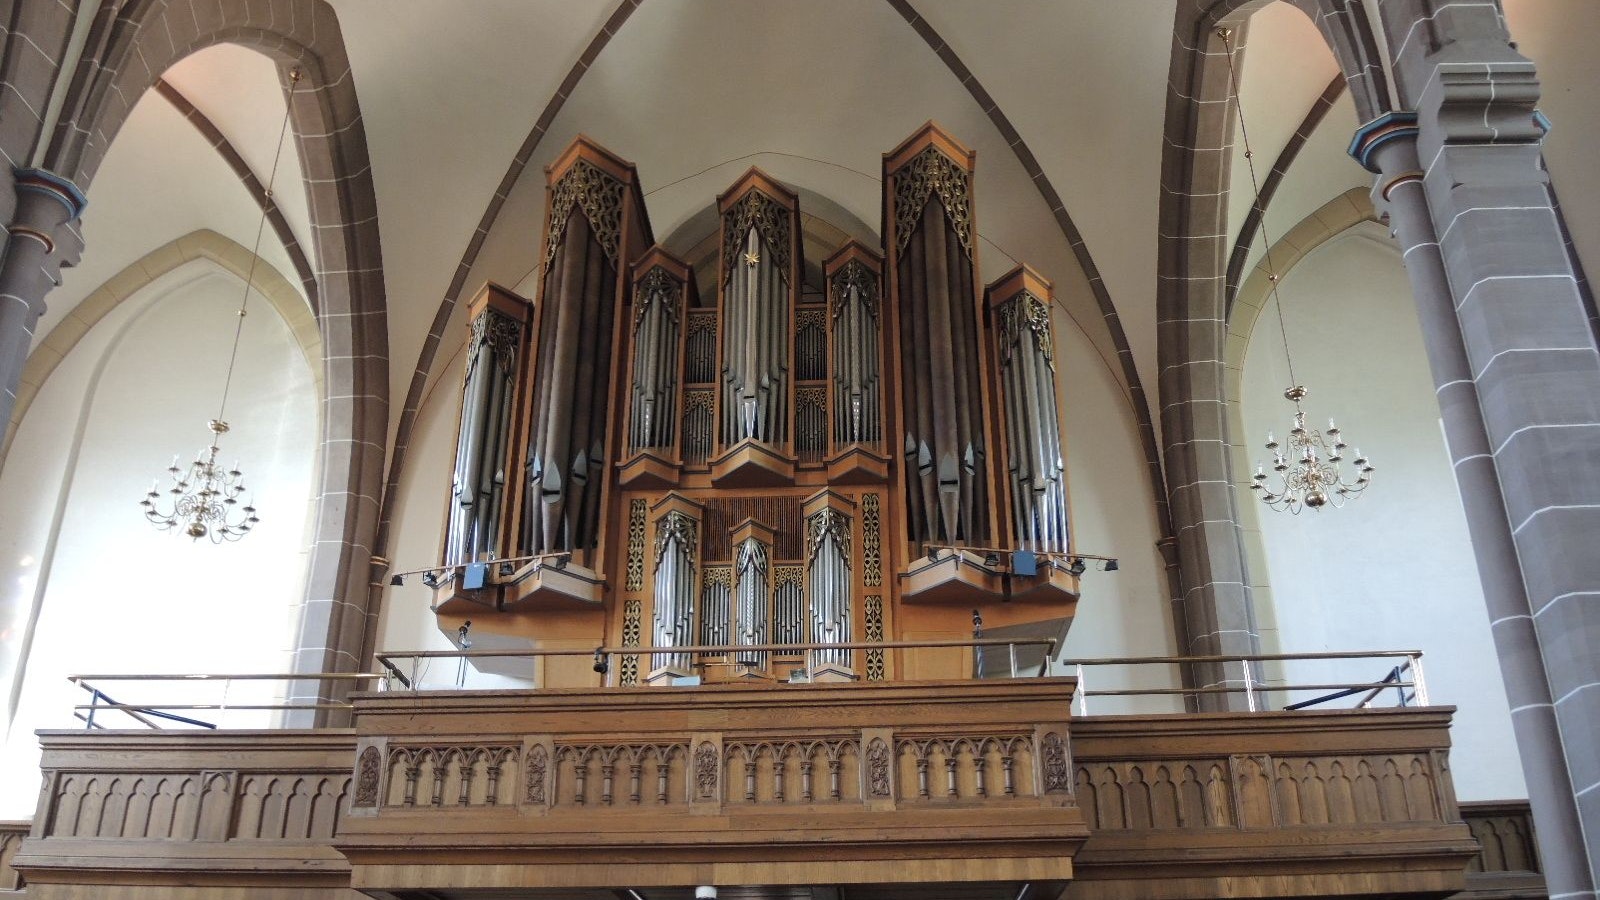 Die große Orgel in der St. Vitus-Kirche wurde vom Osnabrücker Orgelbauer Mathias Kreienbrink gebaut. Das Instrument hat 30 klingende Register mit 2196 Pfeifen und wurde am 23. Januar 1972 eingeweiht. Foto: Koopmeiners